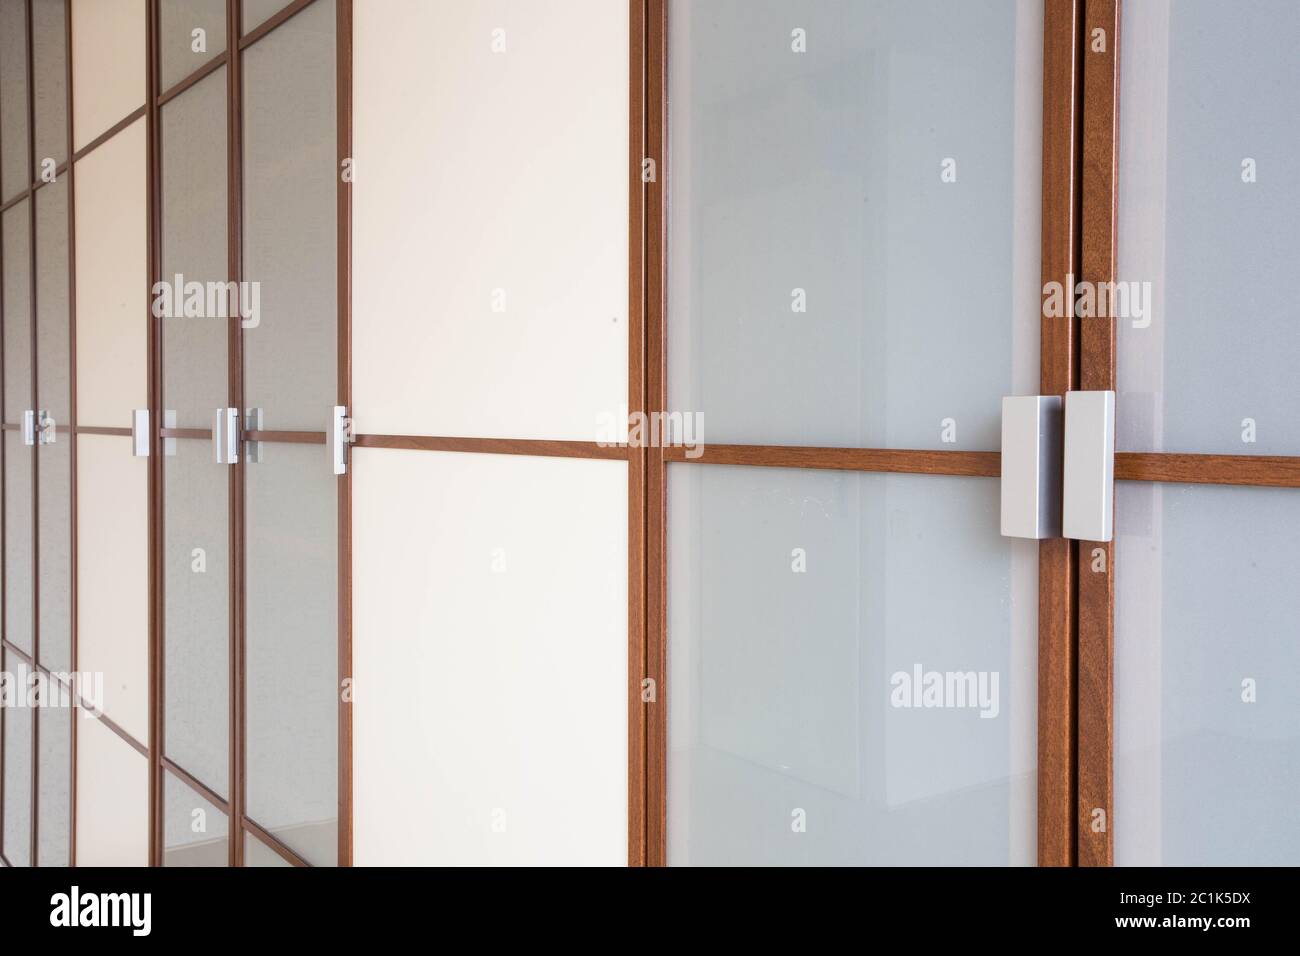 Les portes de penderie blanche en bois libre pour les vêtements nouveau design moderne Banque D'Images